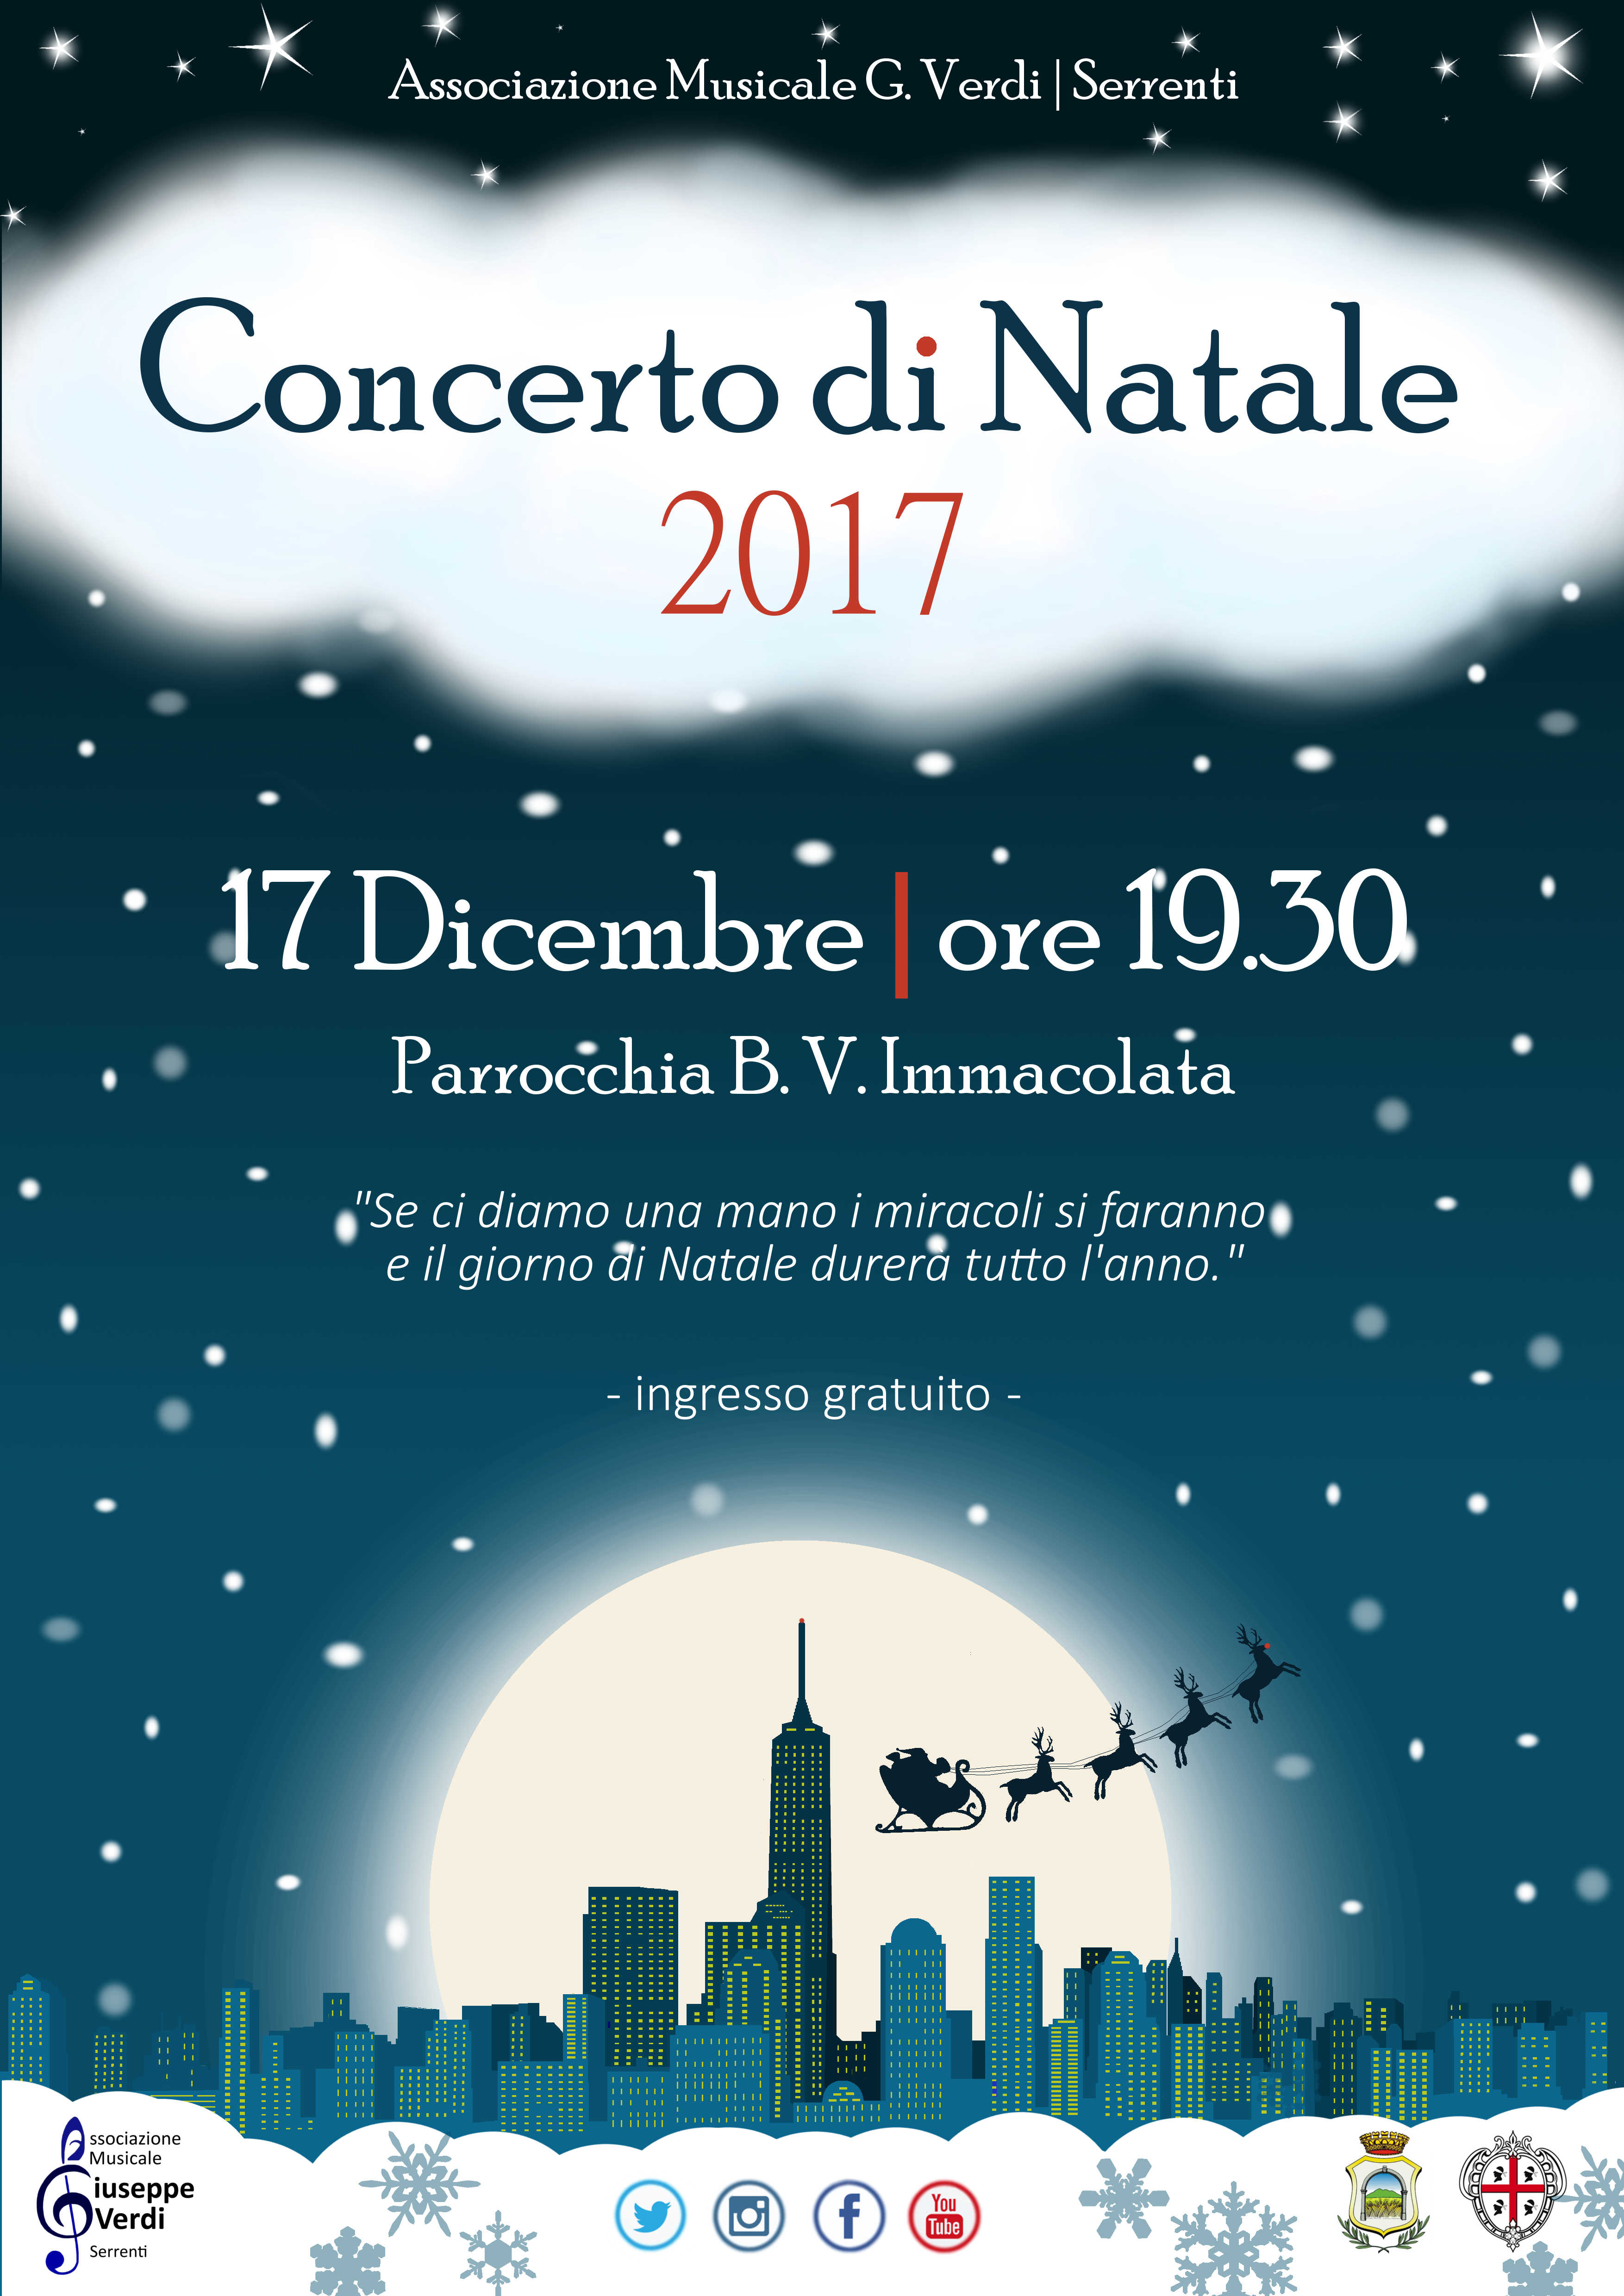 Concerto di Natale 2017 a Serrenti